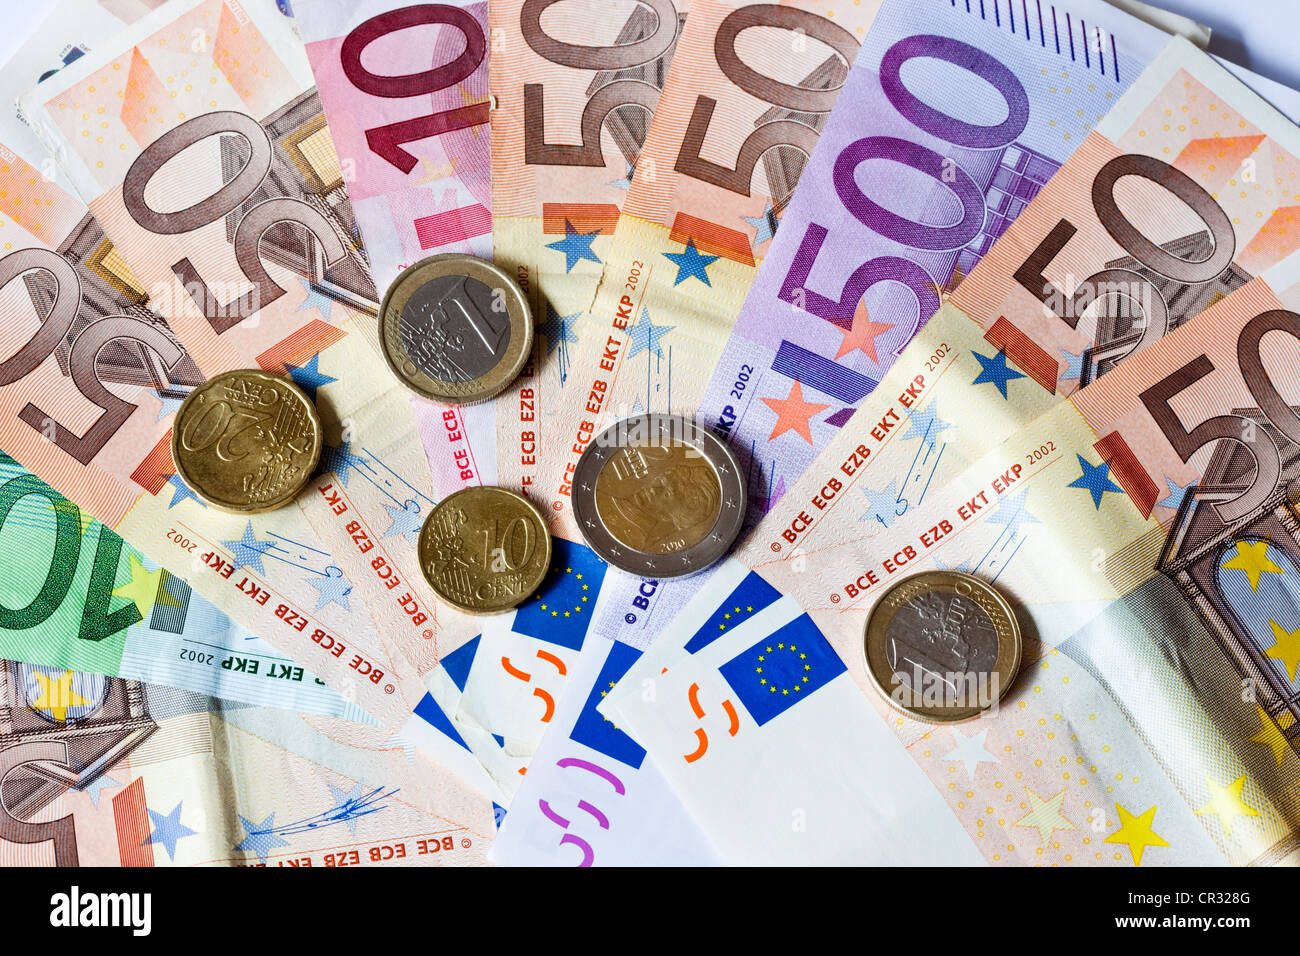 Los billetes y monedas en euros Foto de stock